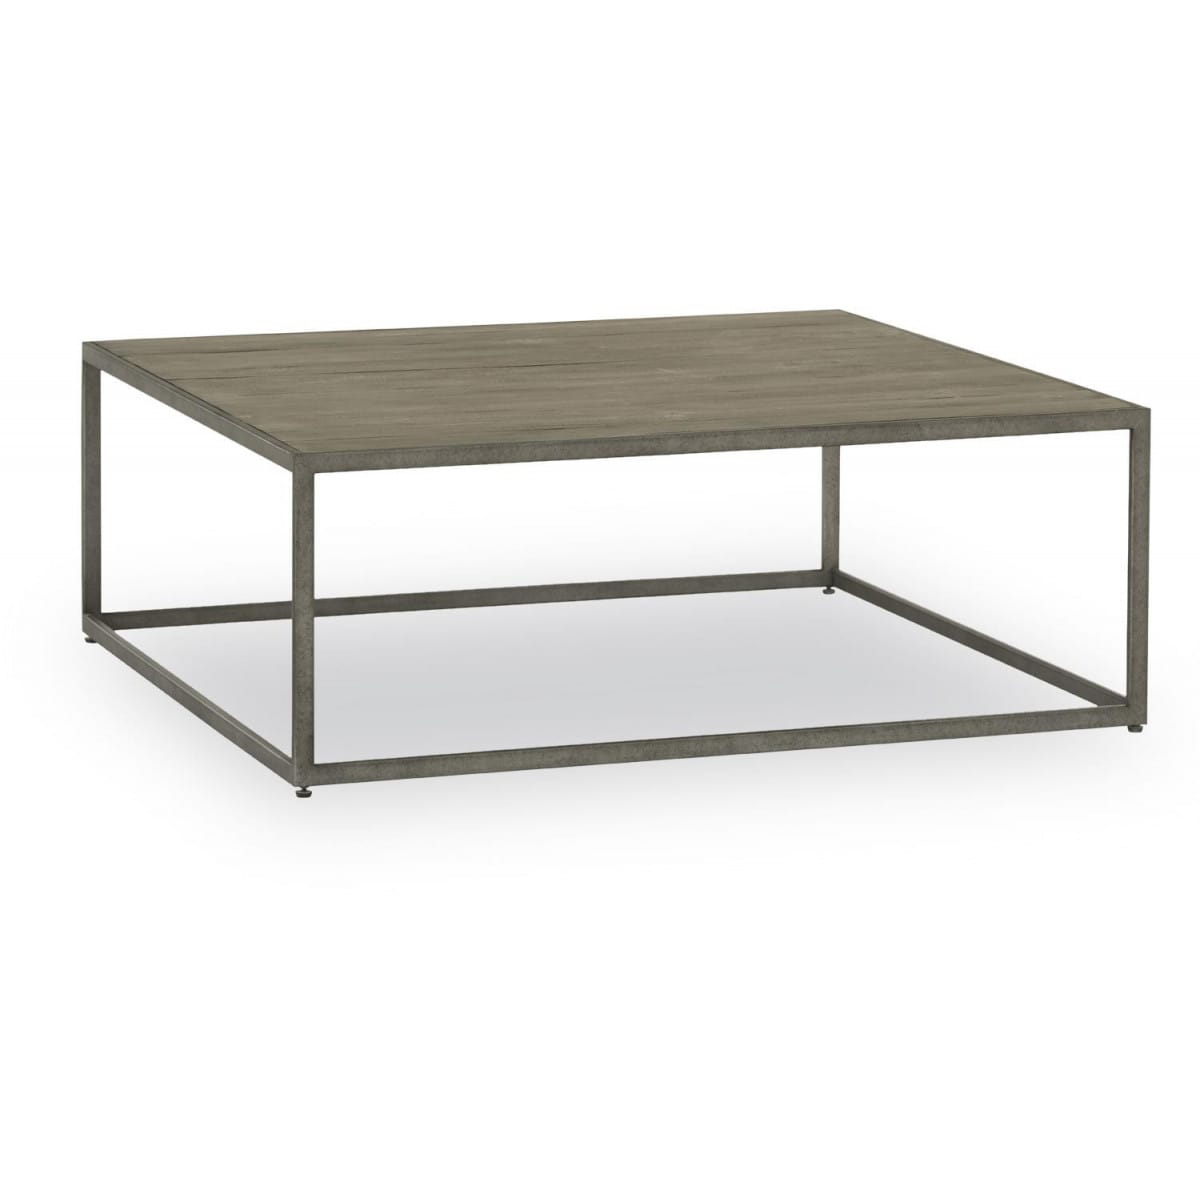 Table basse bois 110x110x40cm - gris